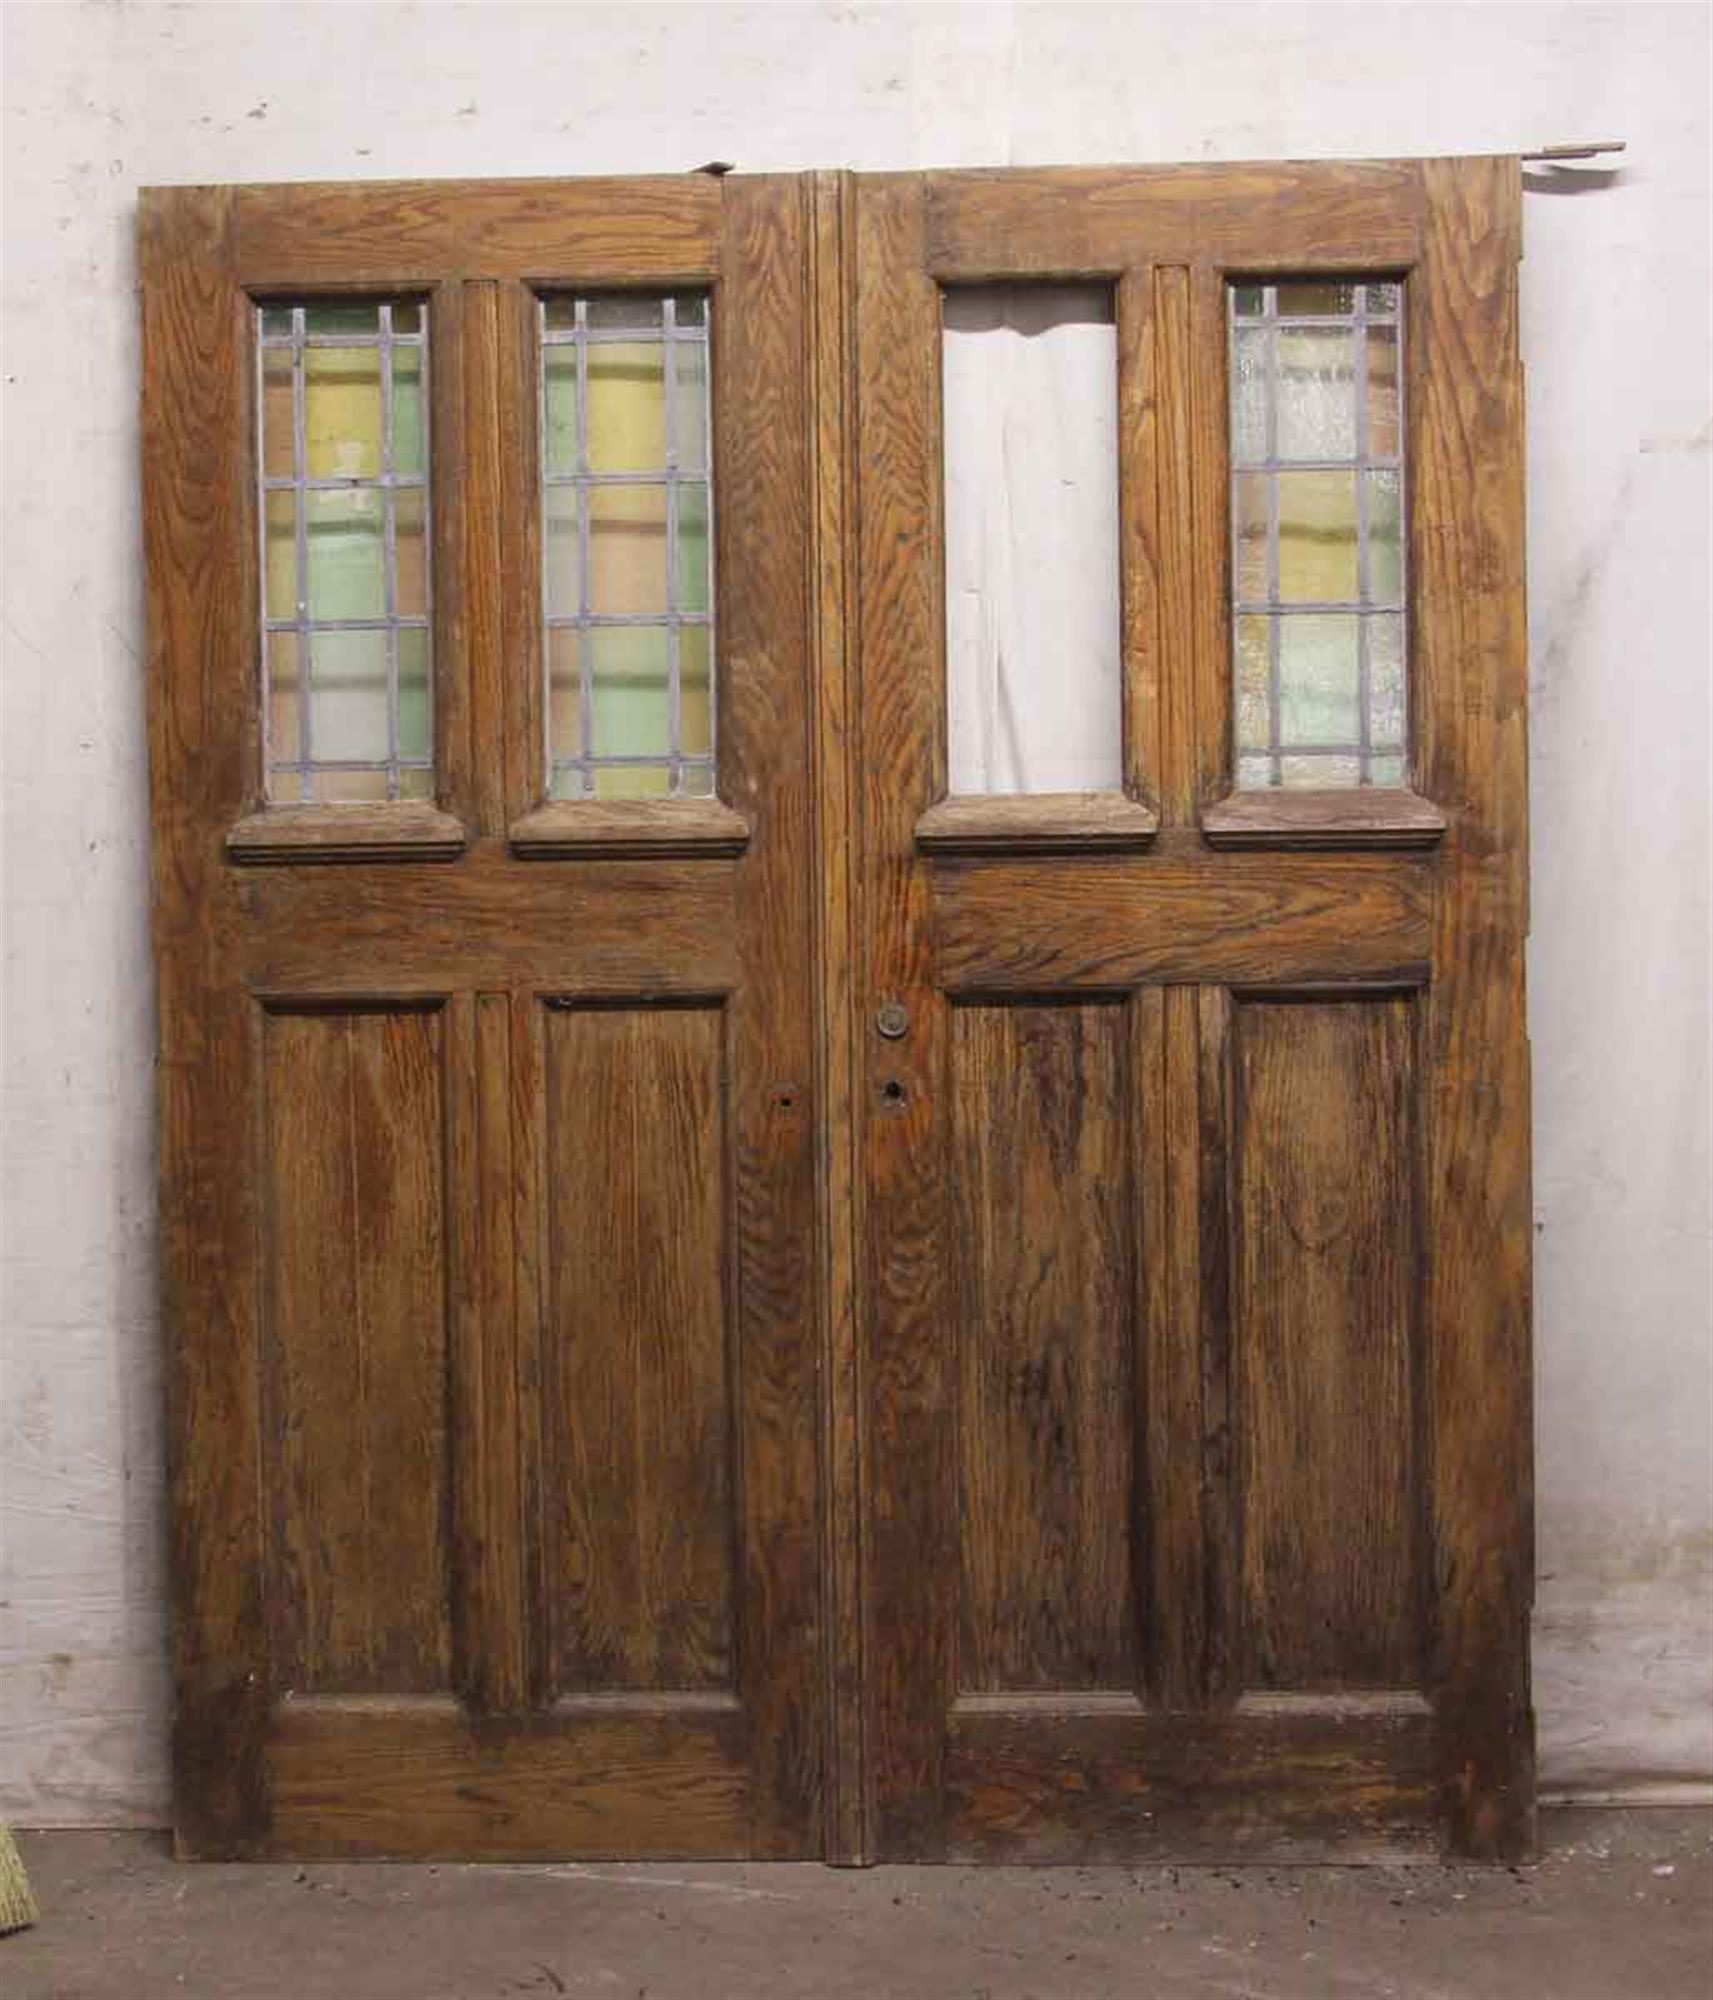 chapel doors